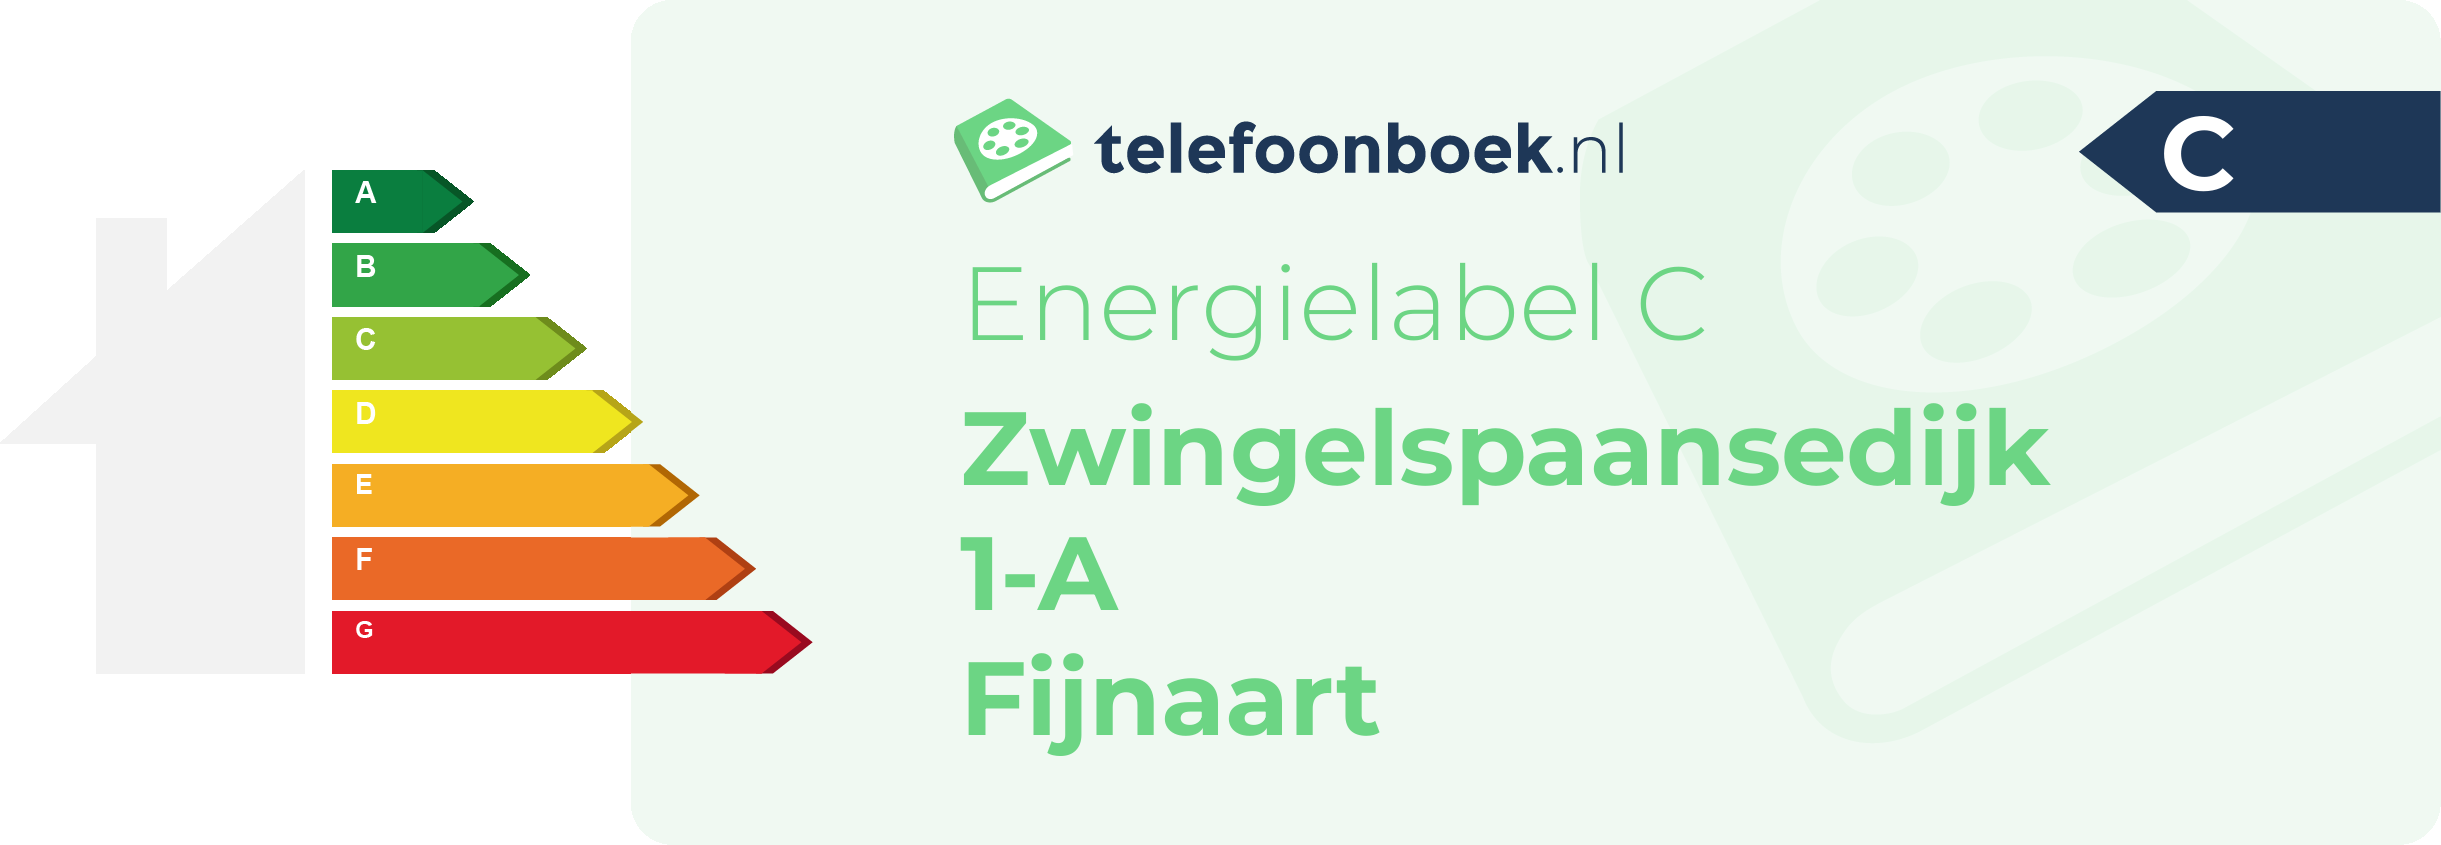 Energielabel Zwingelspaansedijk 1-A Fijnaart